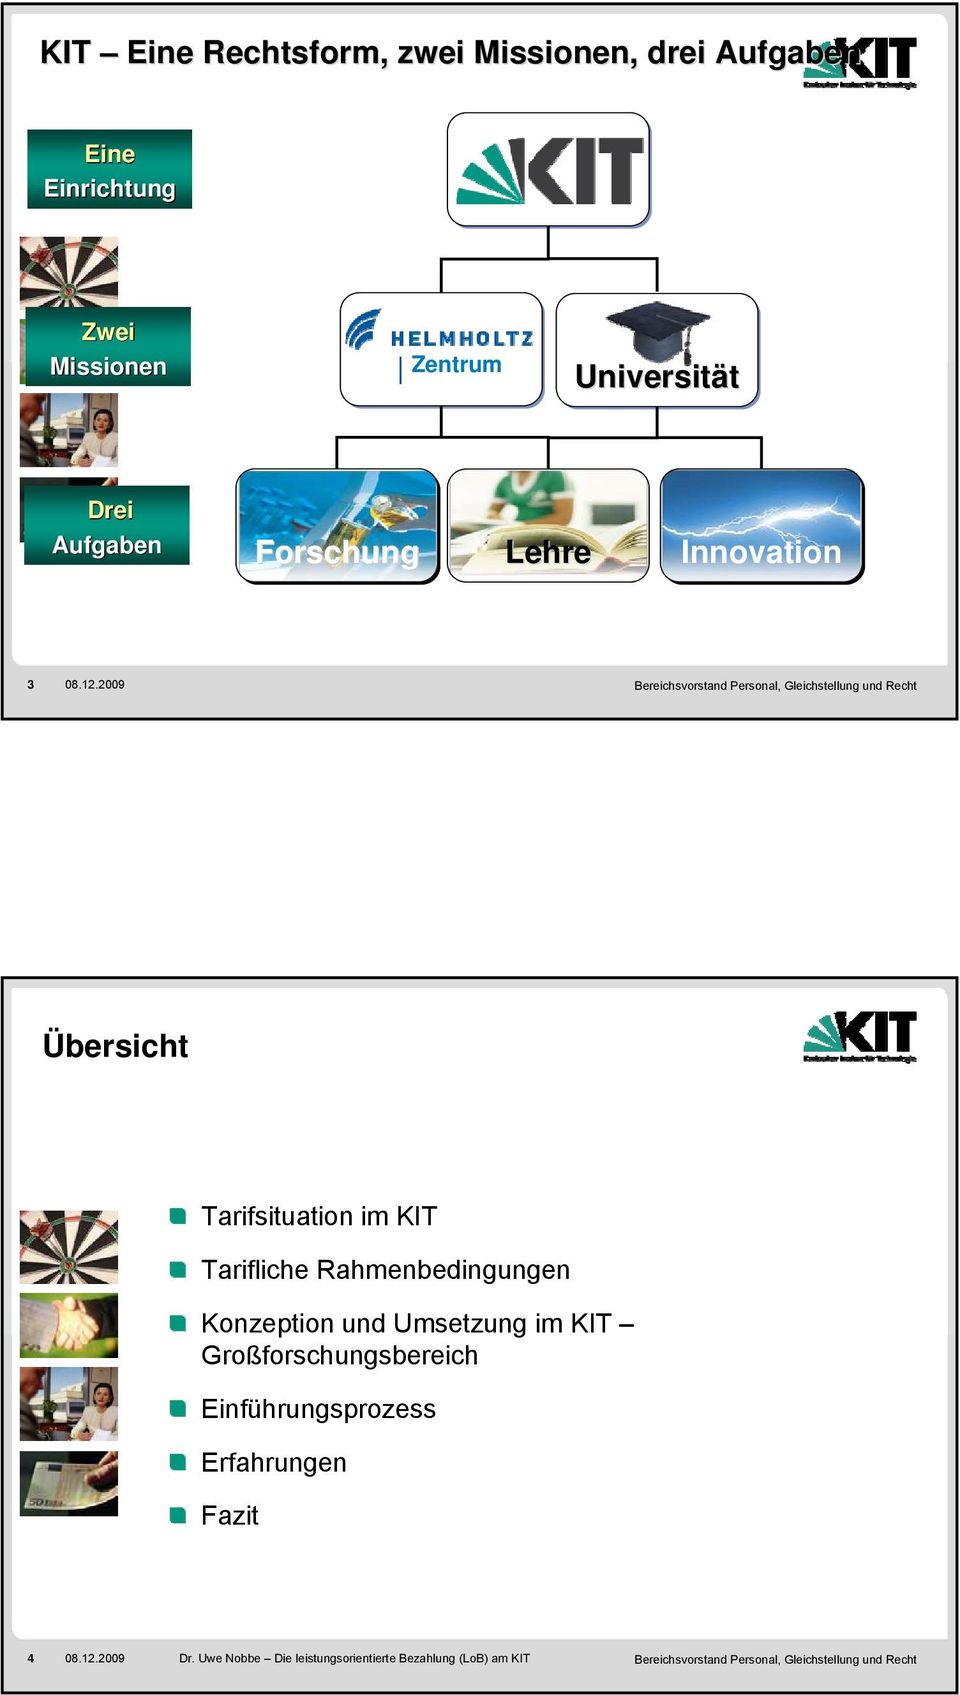 2009 Übersicht Tarifsituation im KIT Tarifliche Rahmenbedingungen Konzeption und Umsetzung im